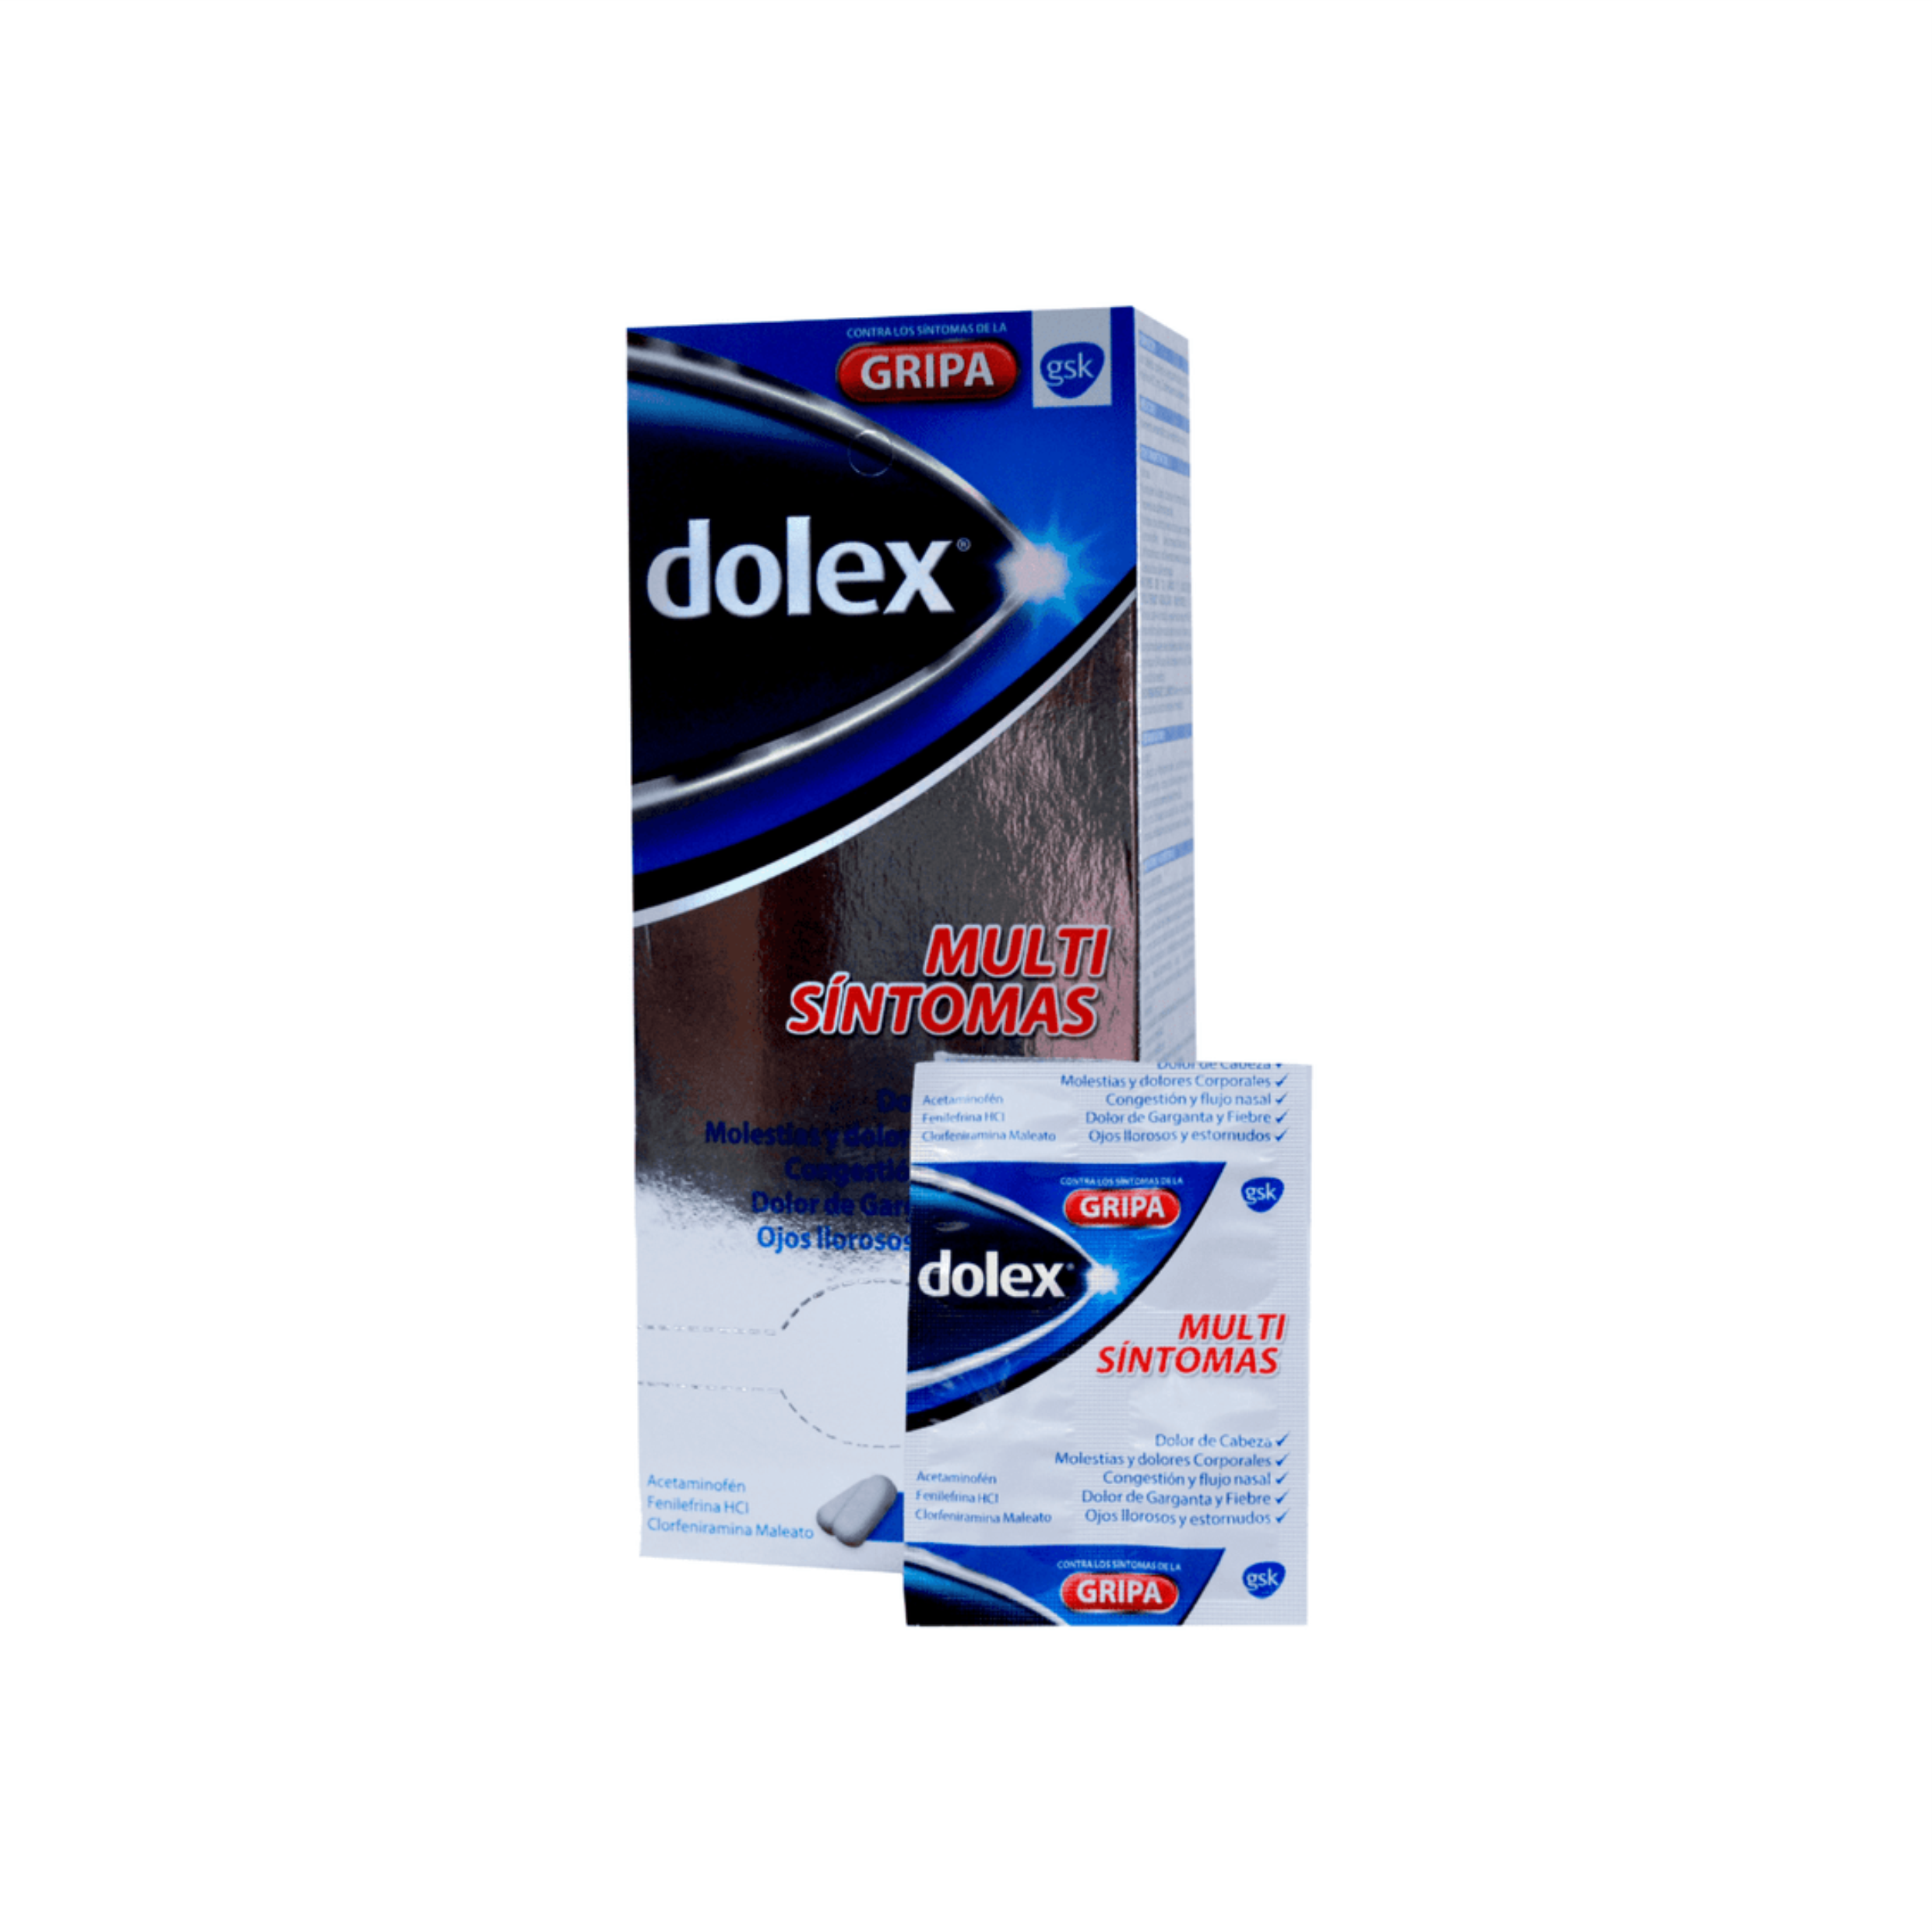 Dolex Gripa 12 Tabletas